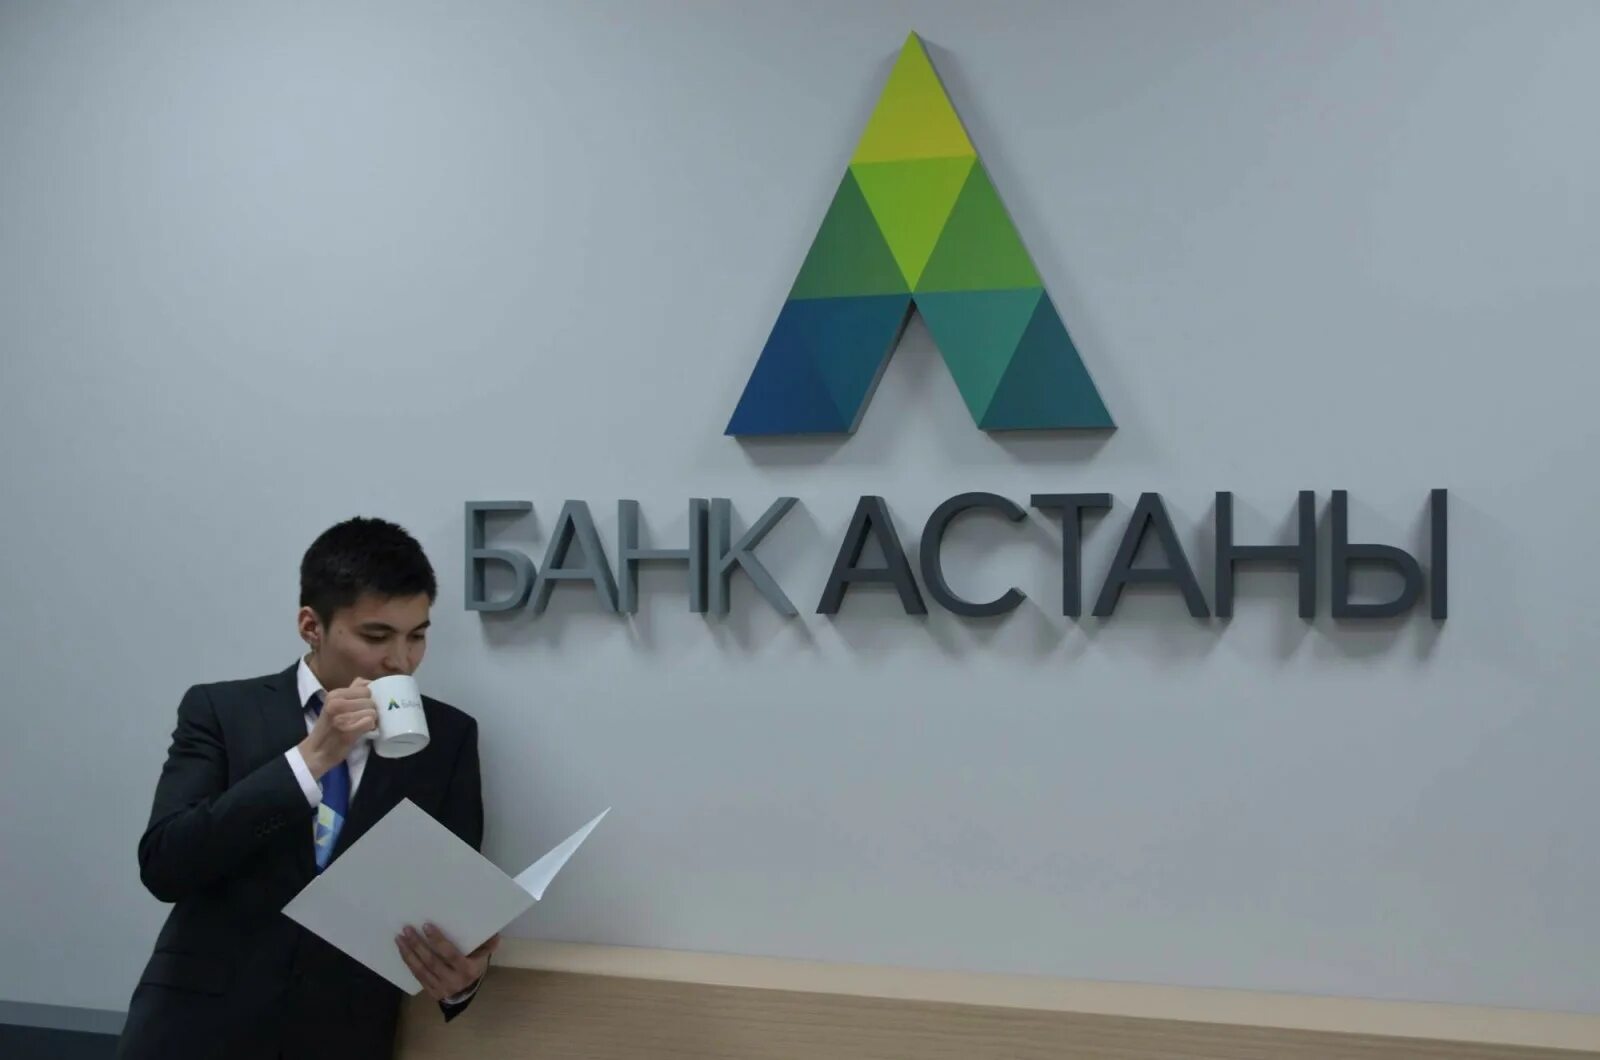 Банк астаны казахстан